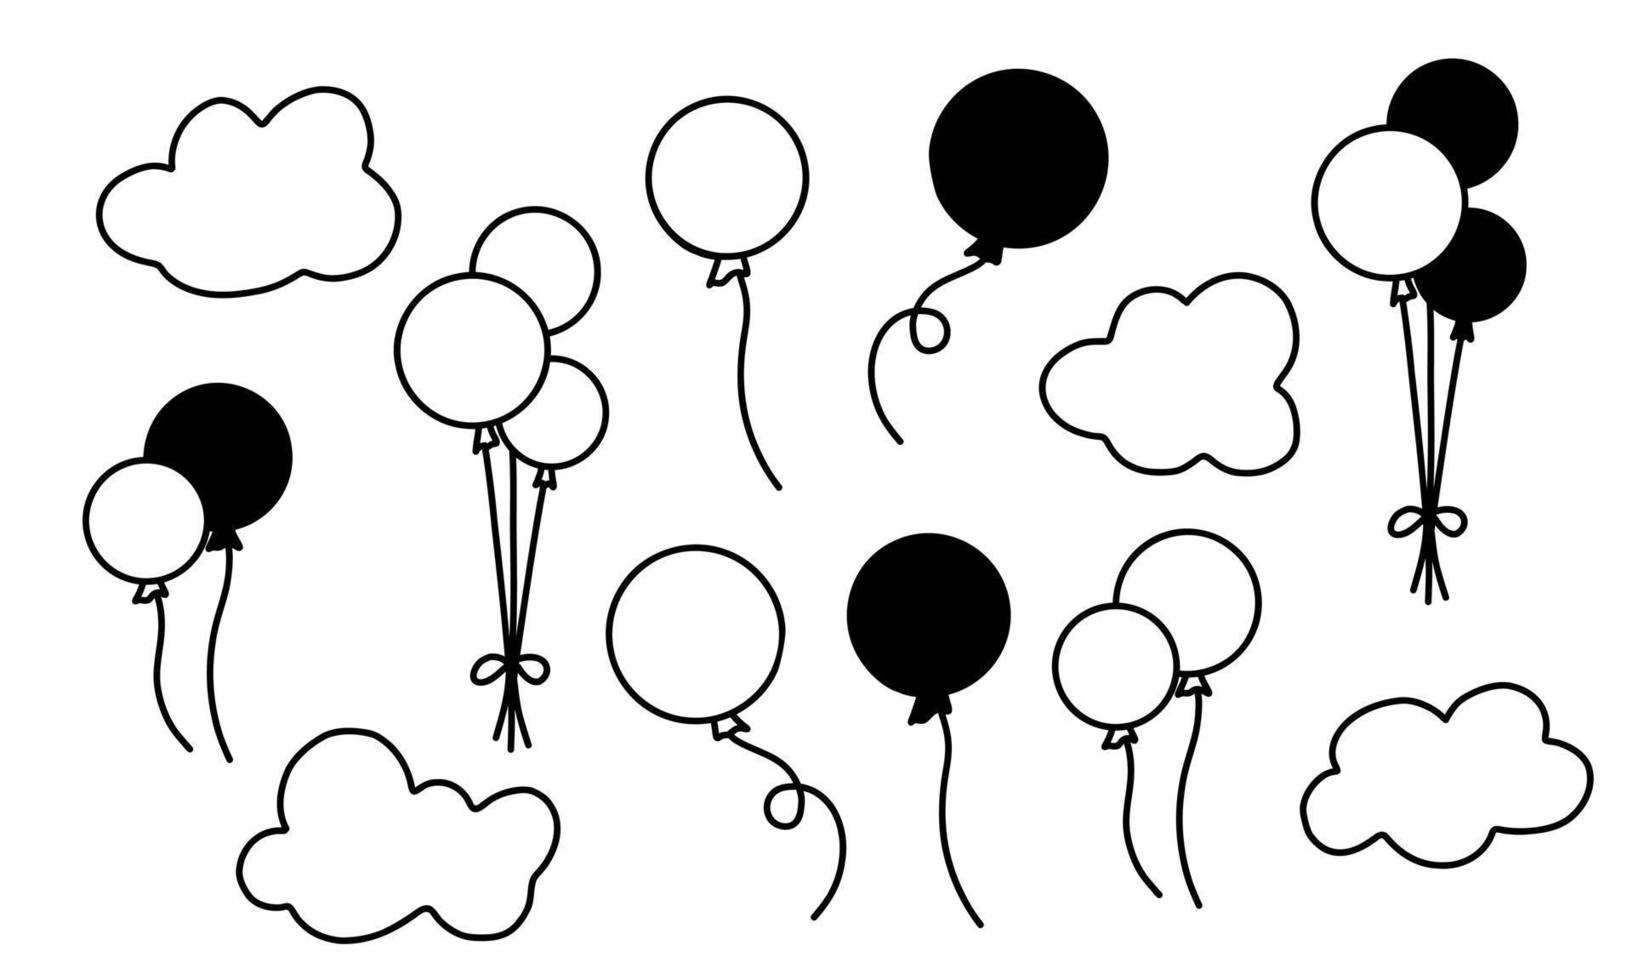 vector set met hete lucht ballonnen en wolken. handgetekende illustratie voor verjaardags- of wenskaarten. collectie met zwarte silhouetten op een witte geïsoleerde achtergrond